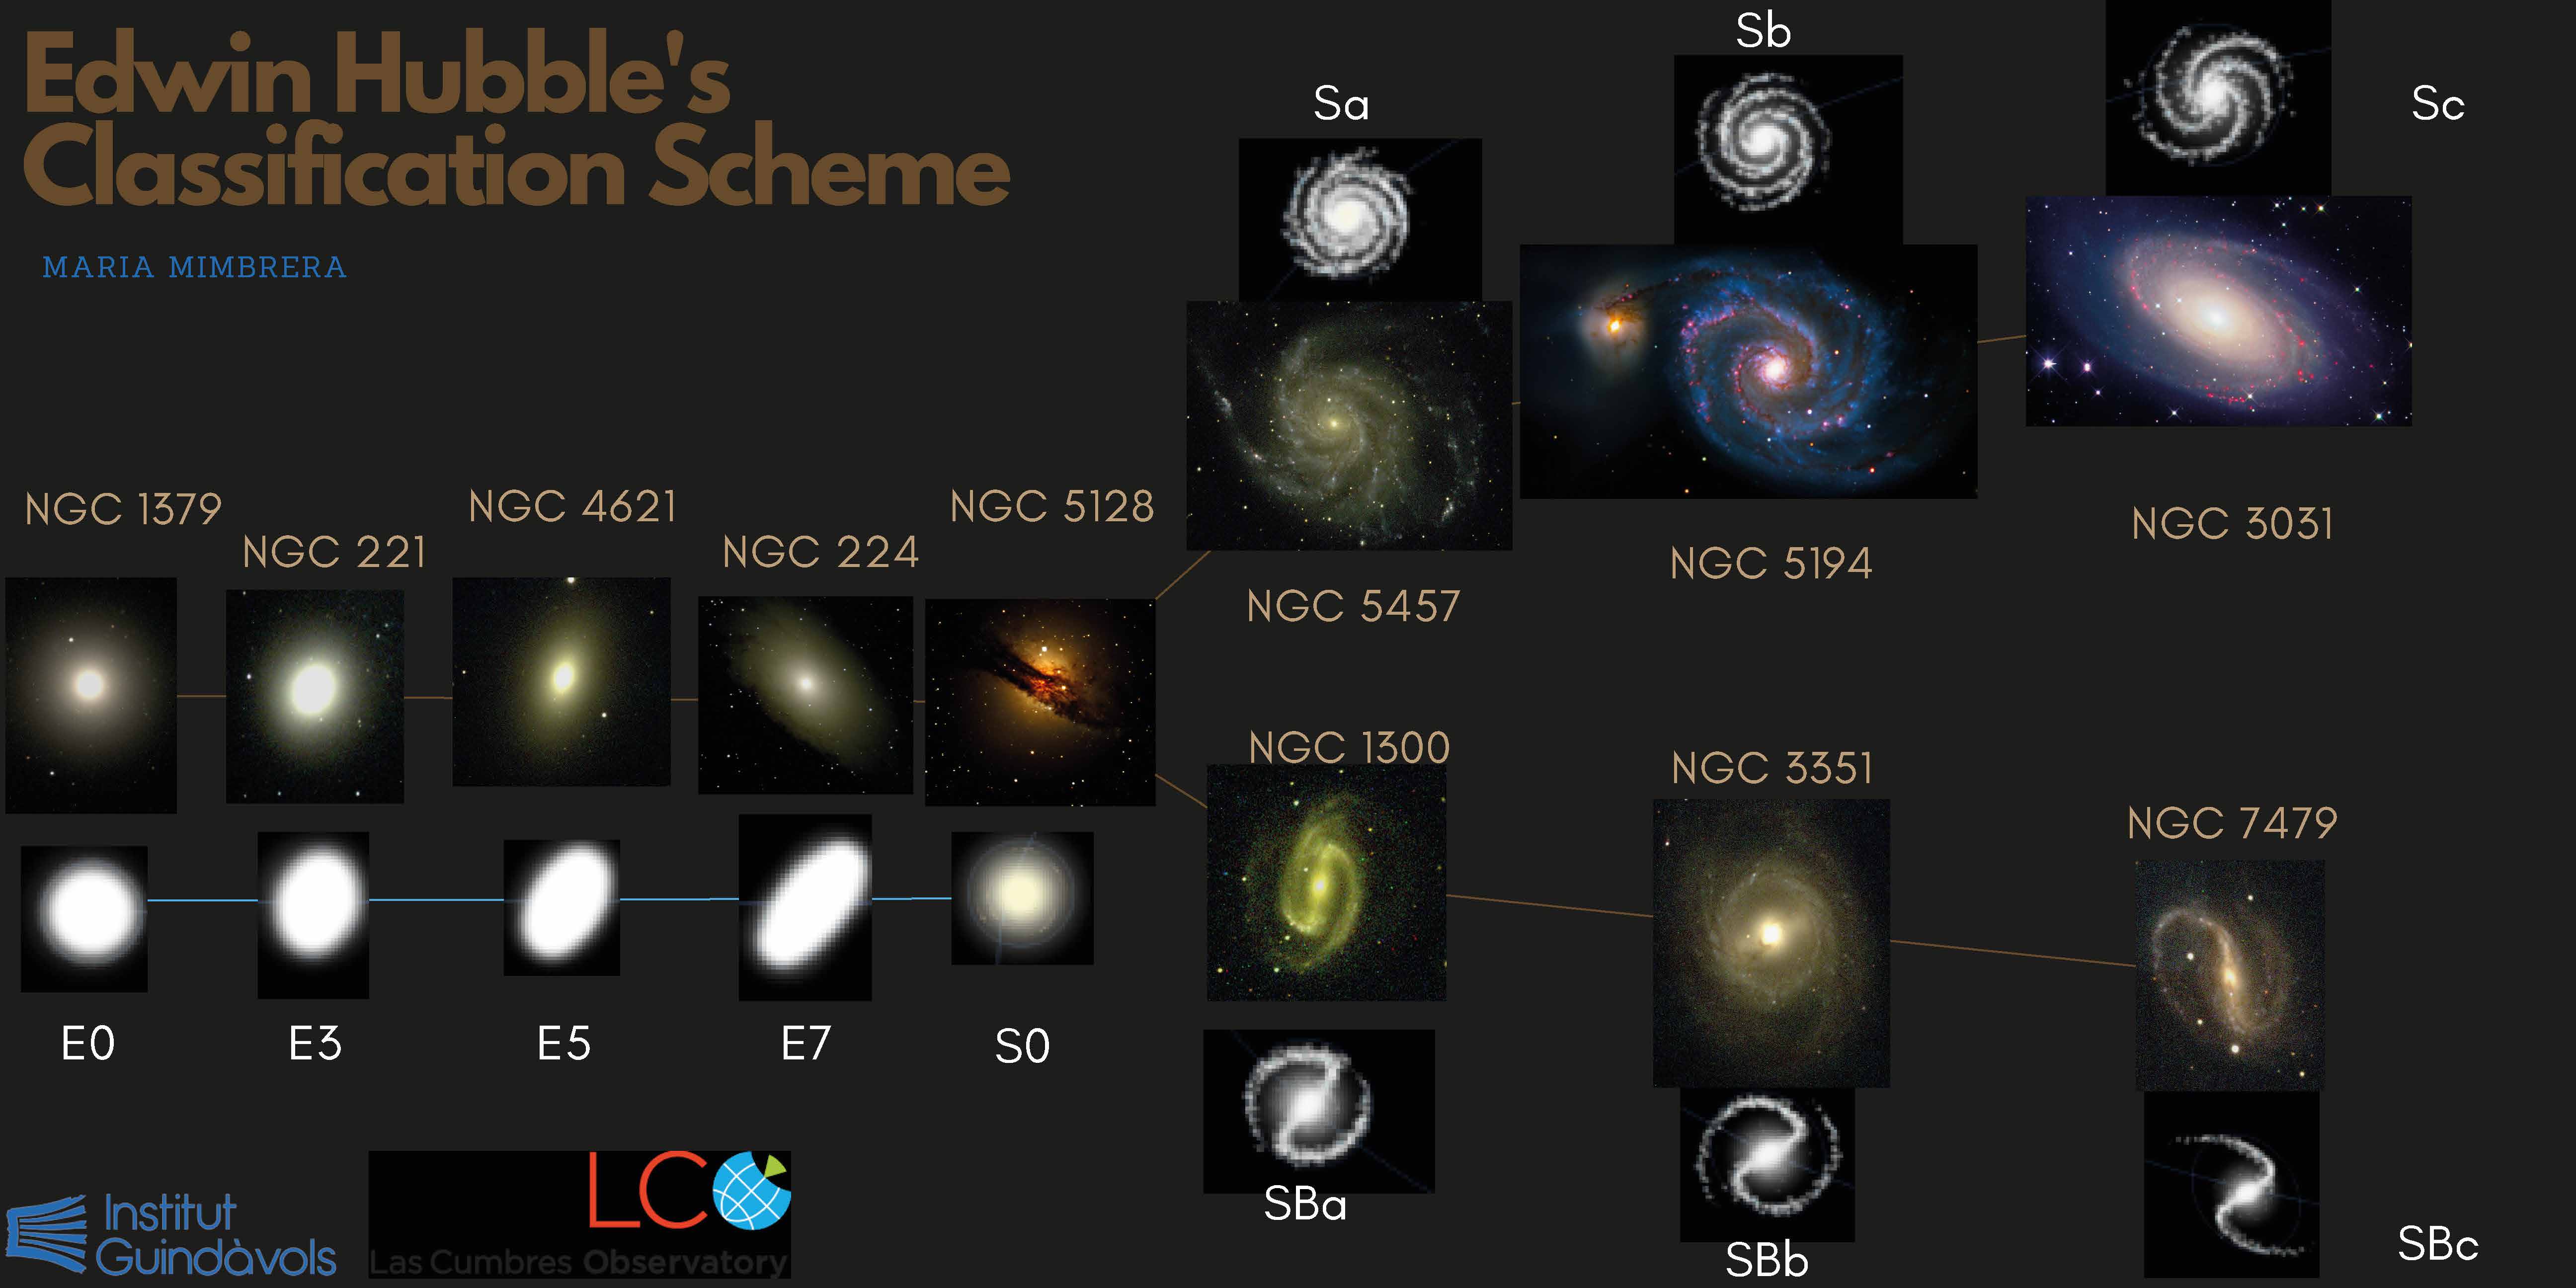 Edwin Hubble's Classification Scheme